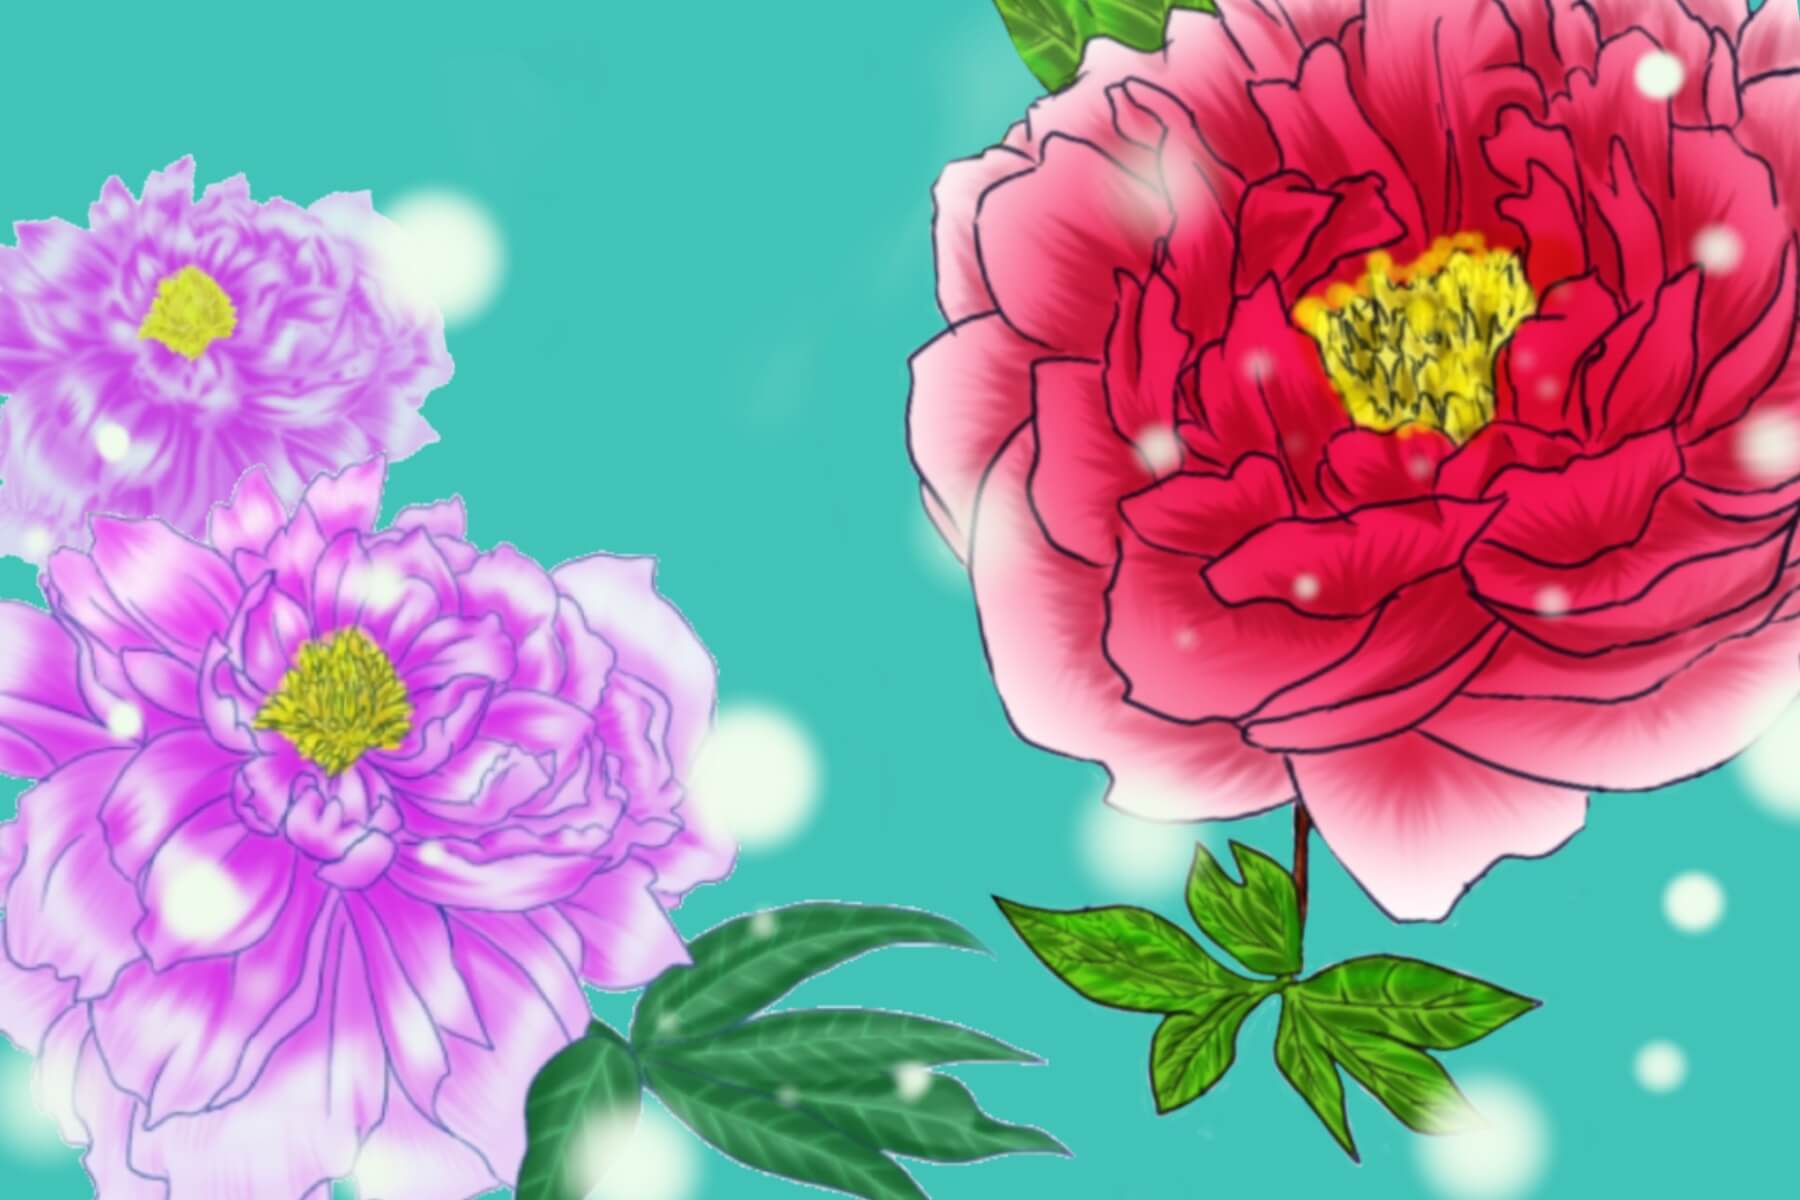 牡丹の花メイキング 色 表現も自由 5分でできる簡単カラーバリエーション